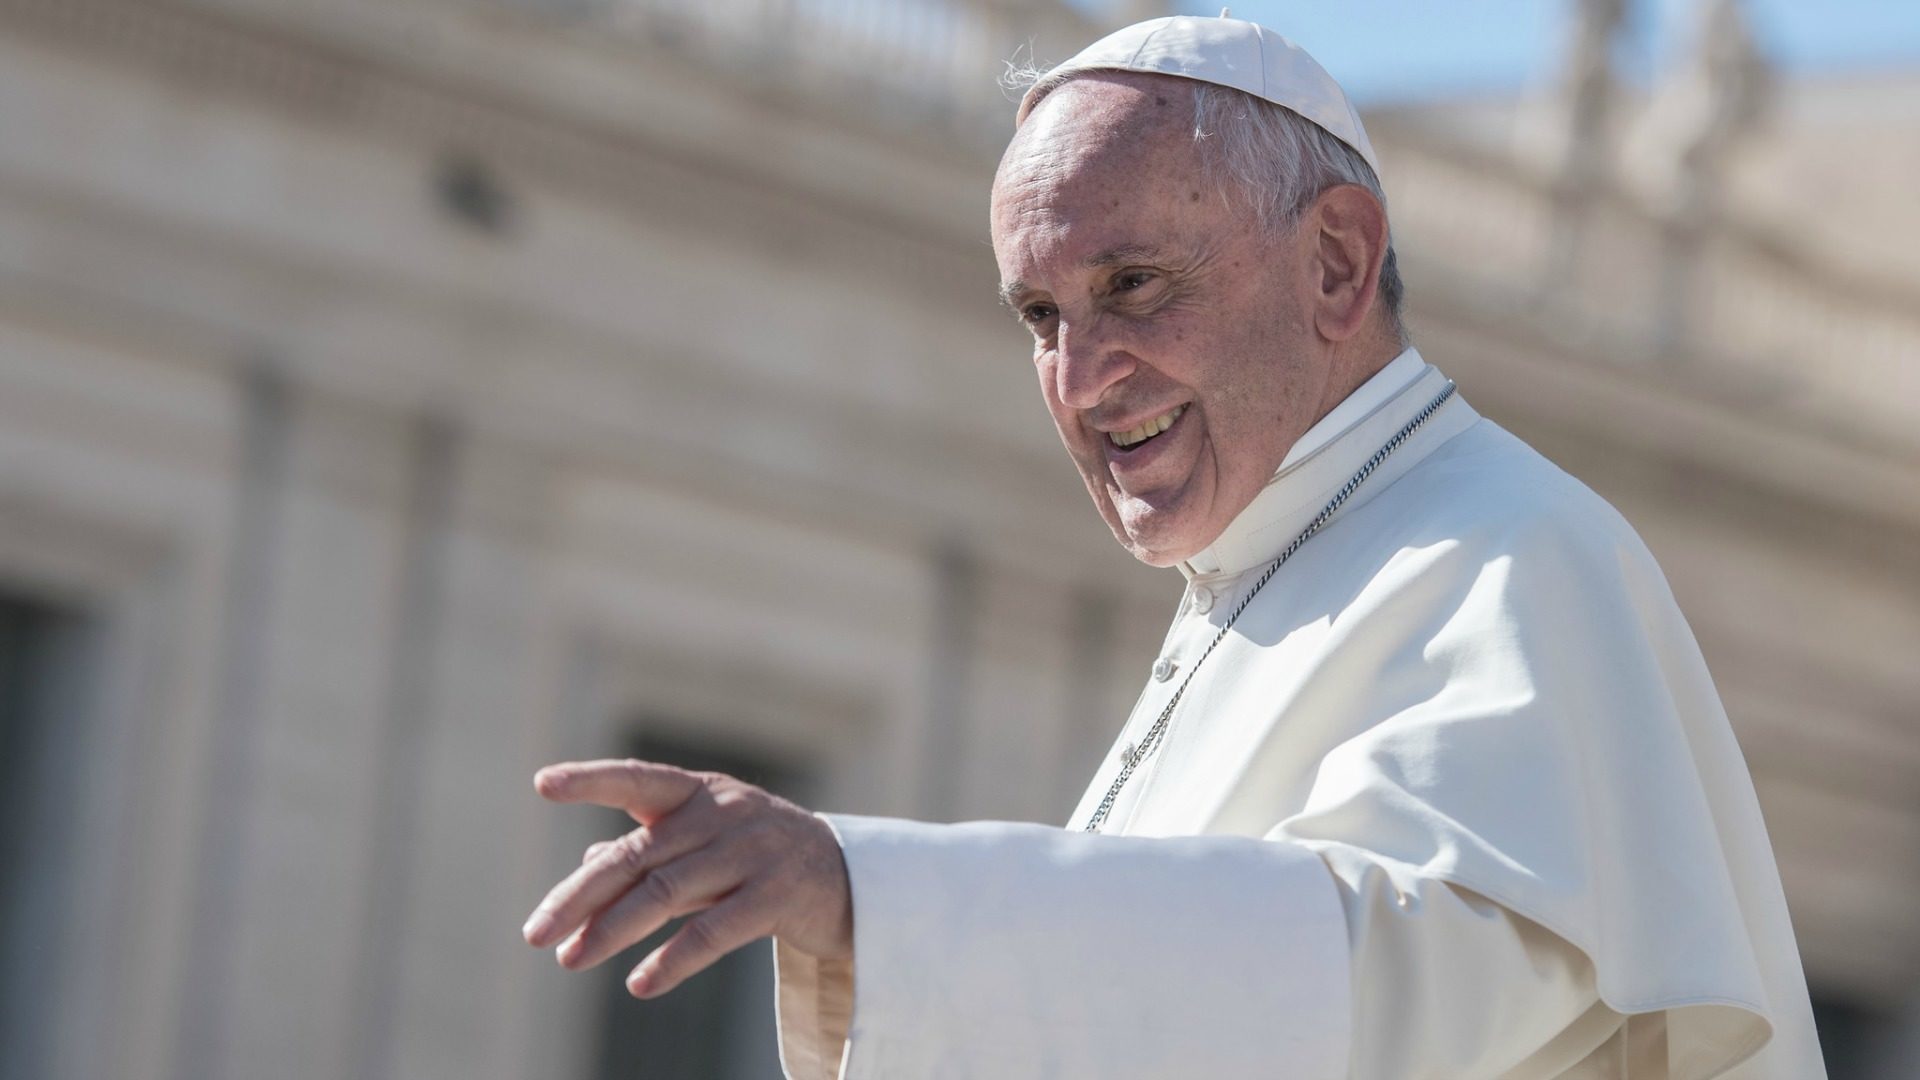 La prière est un antidote contre la haine, affirme le pape François	(Photo: Flickr/Mazur/catholicnews.org.uk/CC BY-NC-SA 2.0)